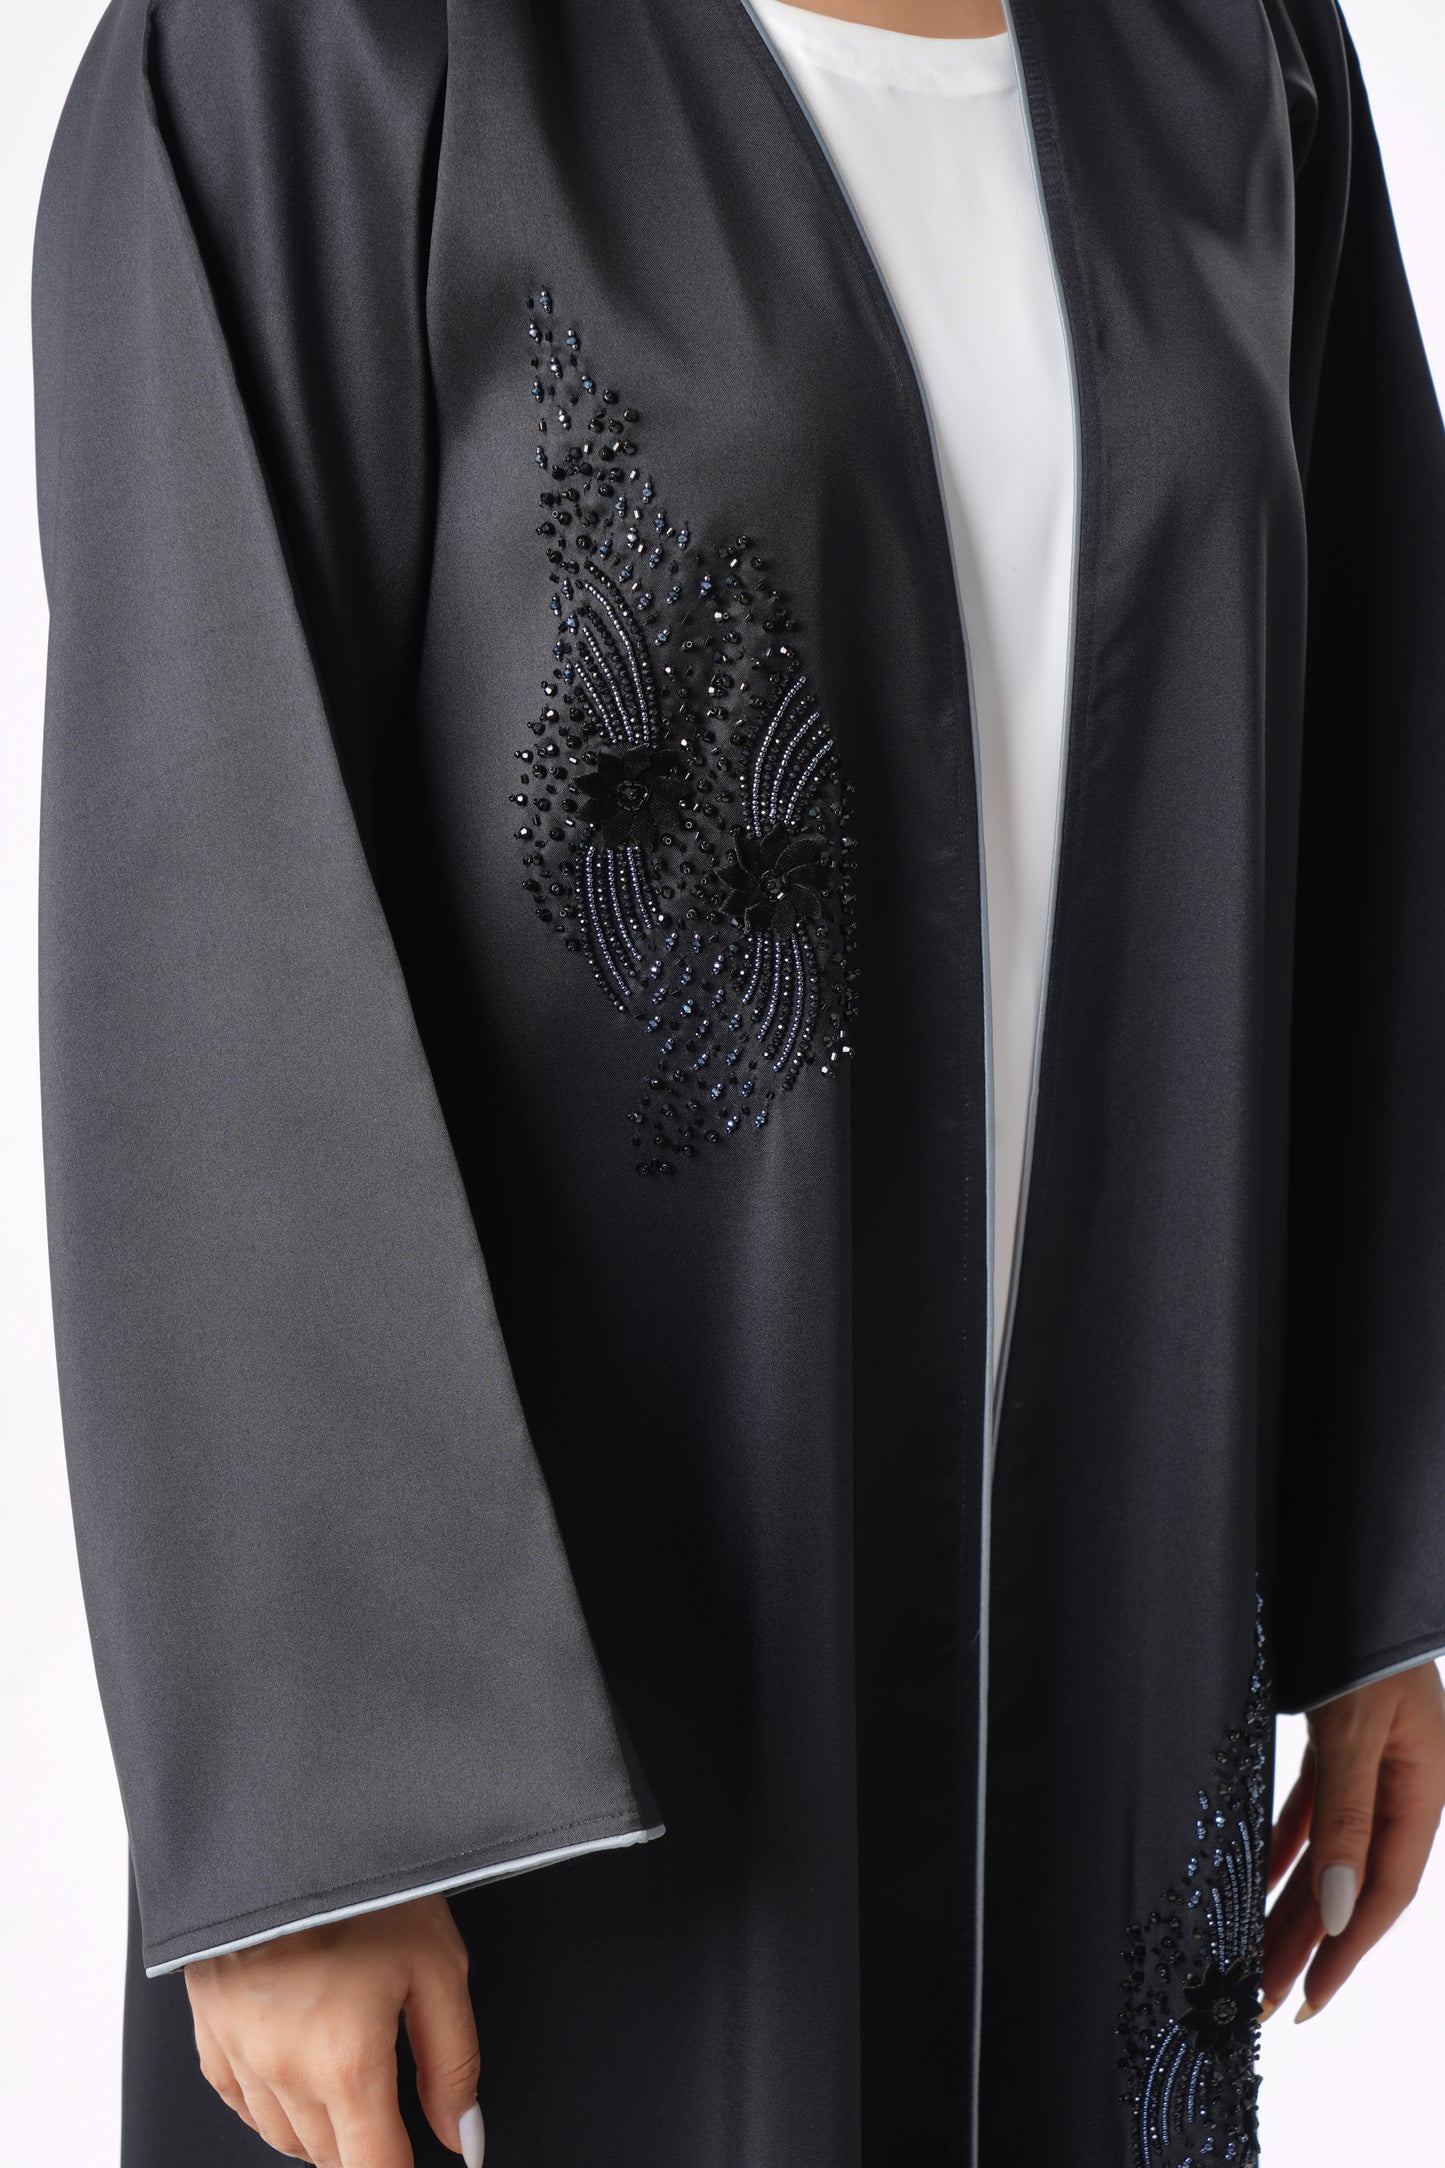 Sophisticated Black Abaya With Elegant Beaded Embellishments